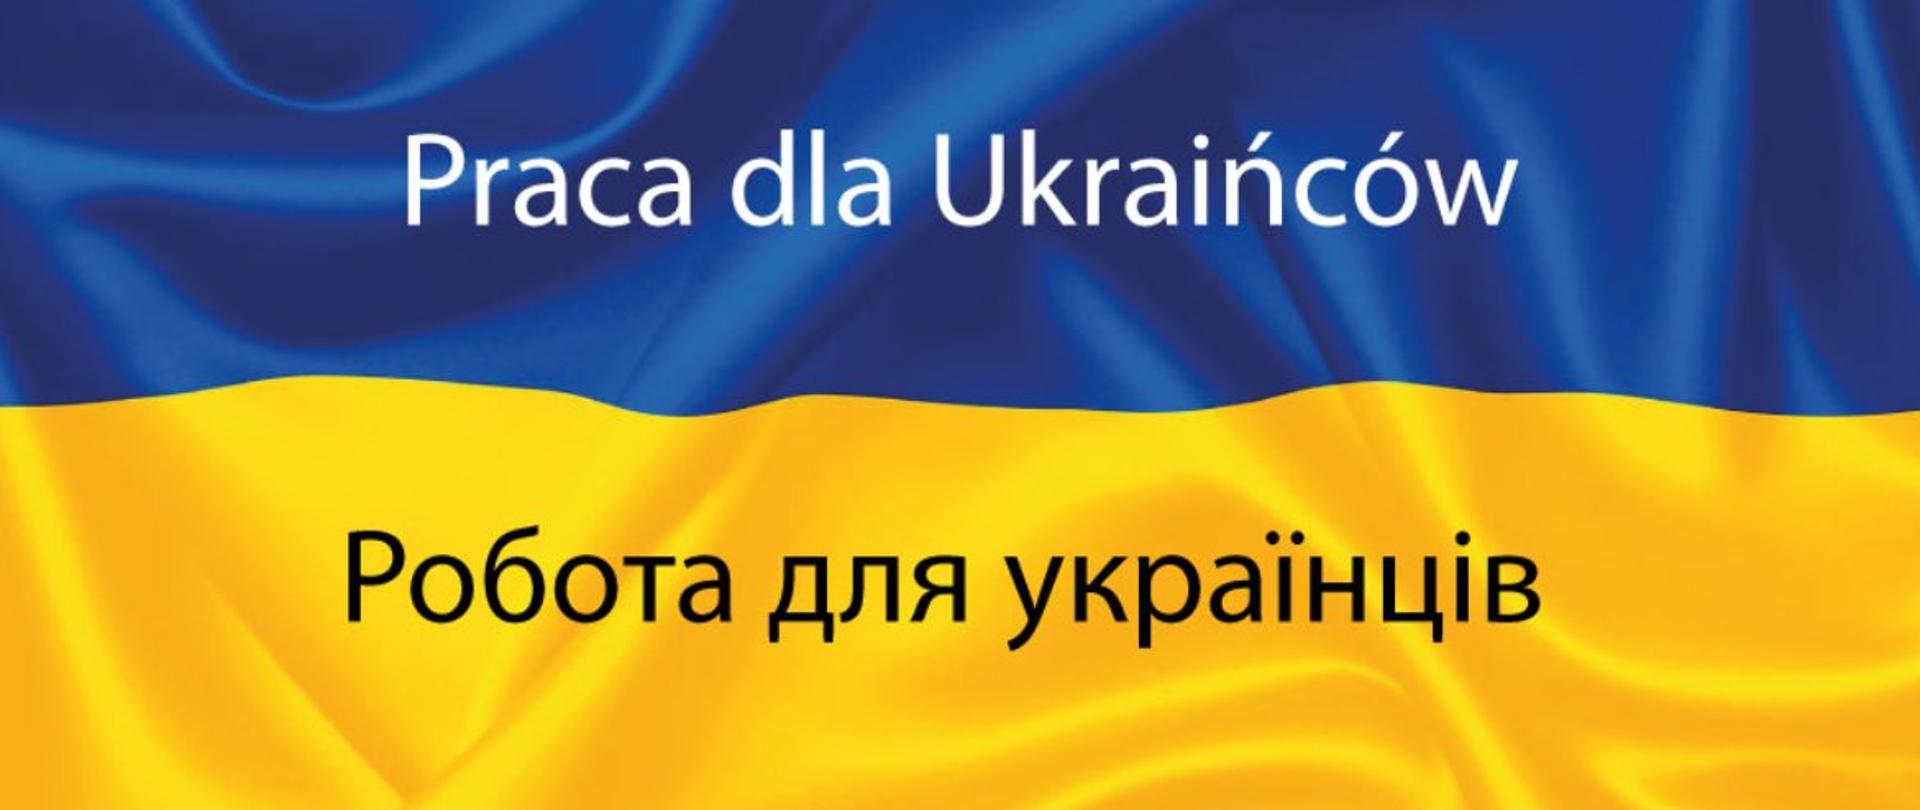 Napis "praca dla Ukrainców" przetłumaczone na język Ukraiński na tle flaki Ukrainy 